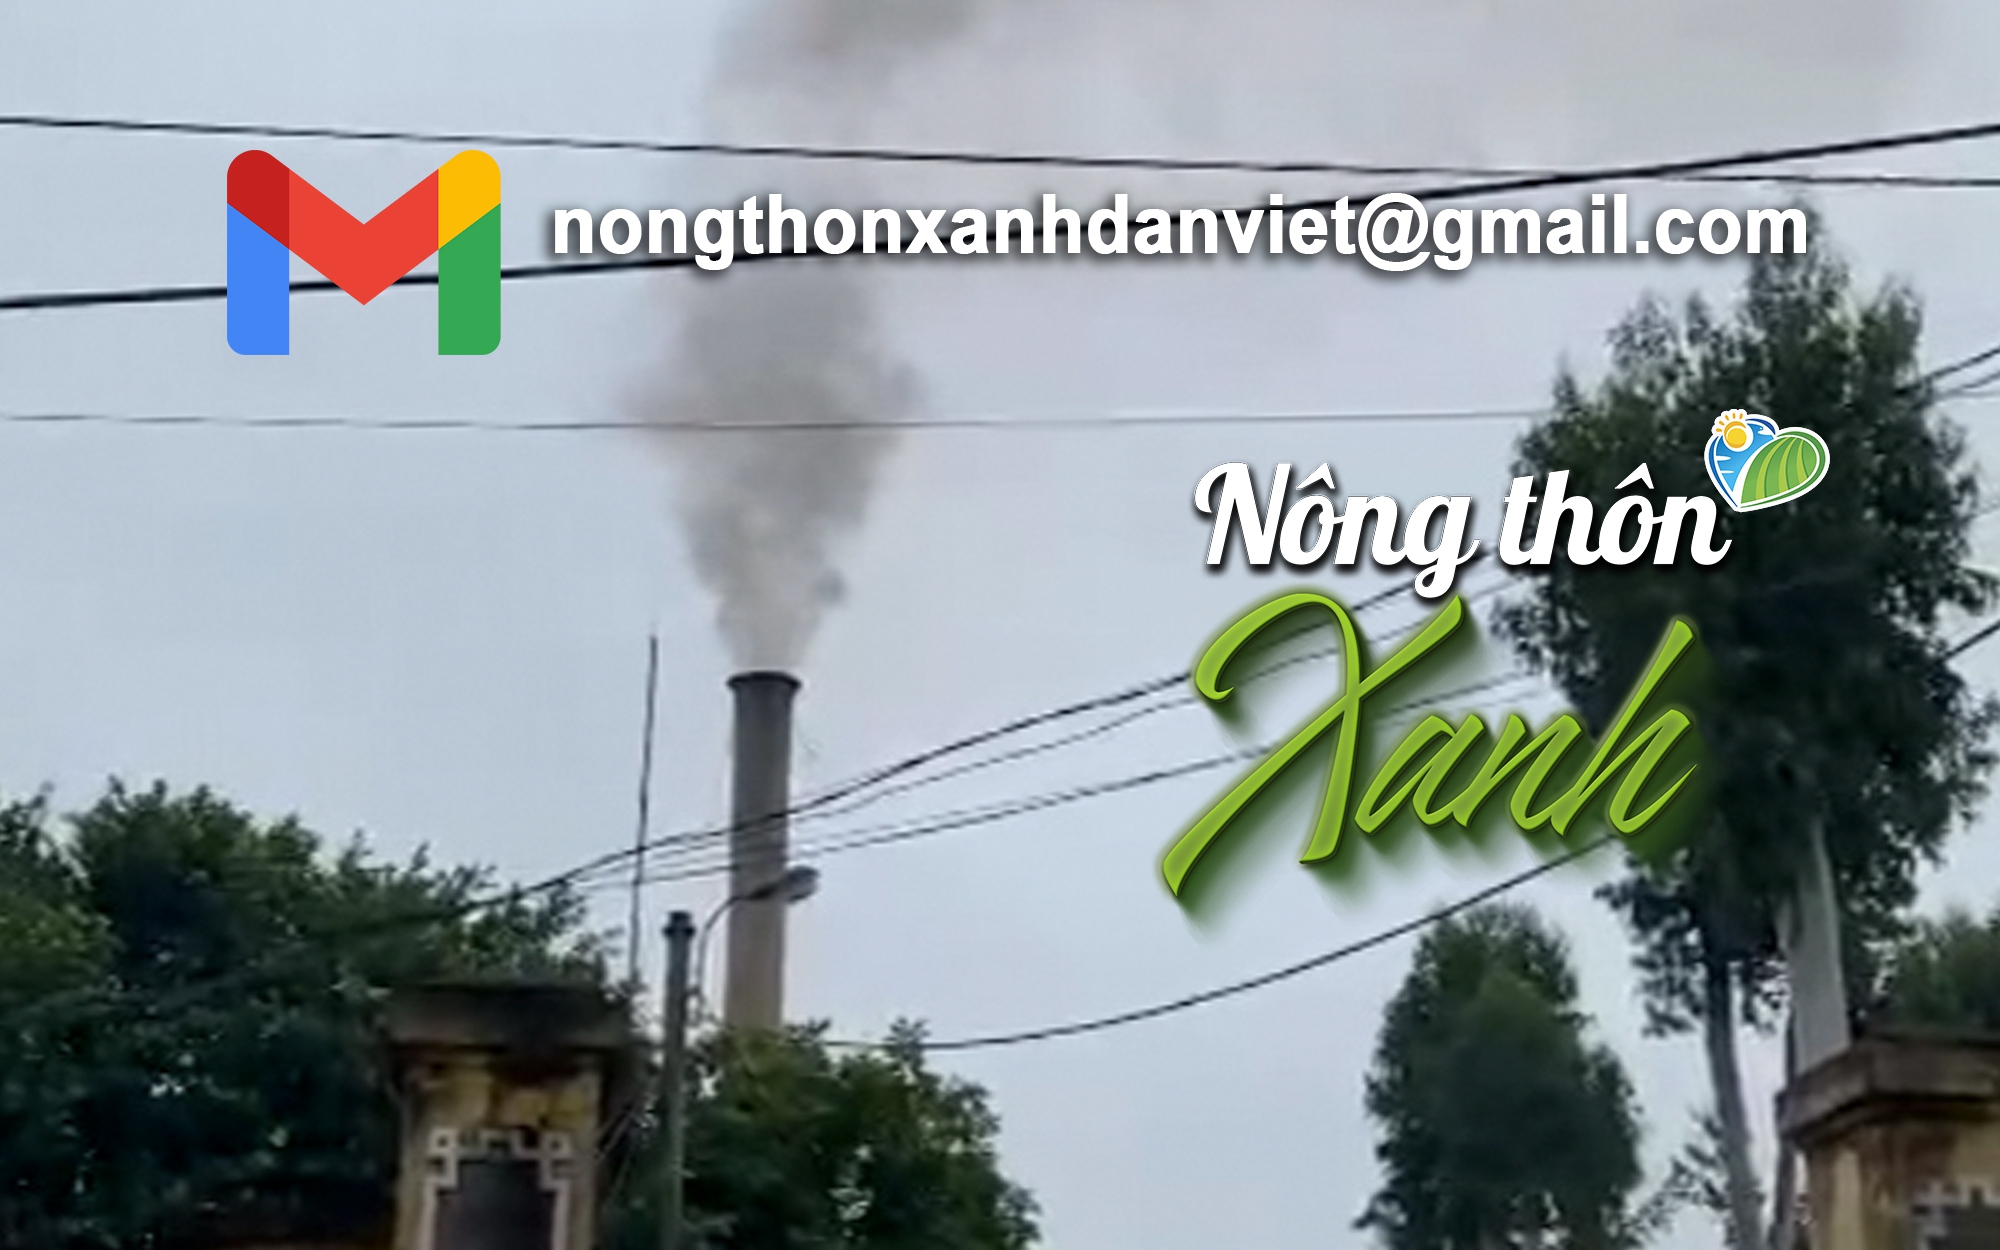 HỘP THƯ NÔNG THÔN XANH: Cột ống khói Đài hóa thân hoàn vũ "thở phì phò" ngay sát khu dân cư